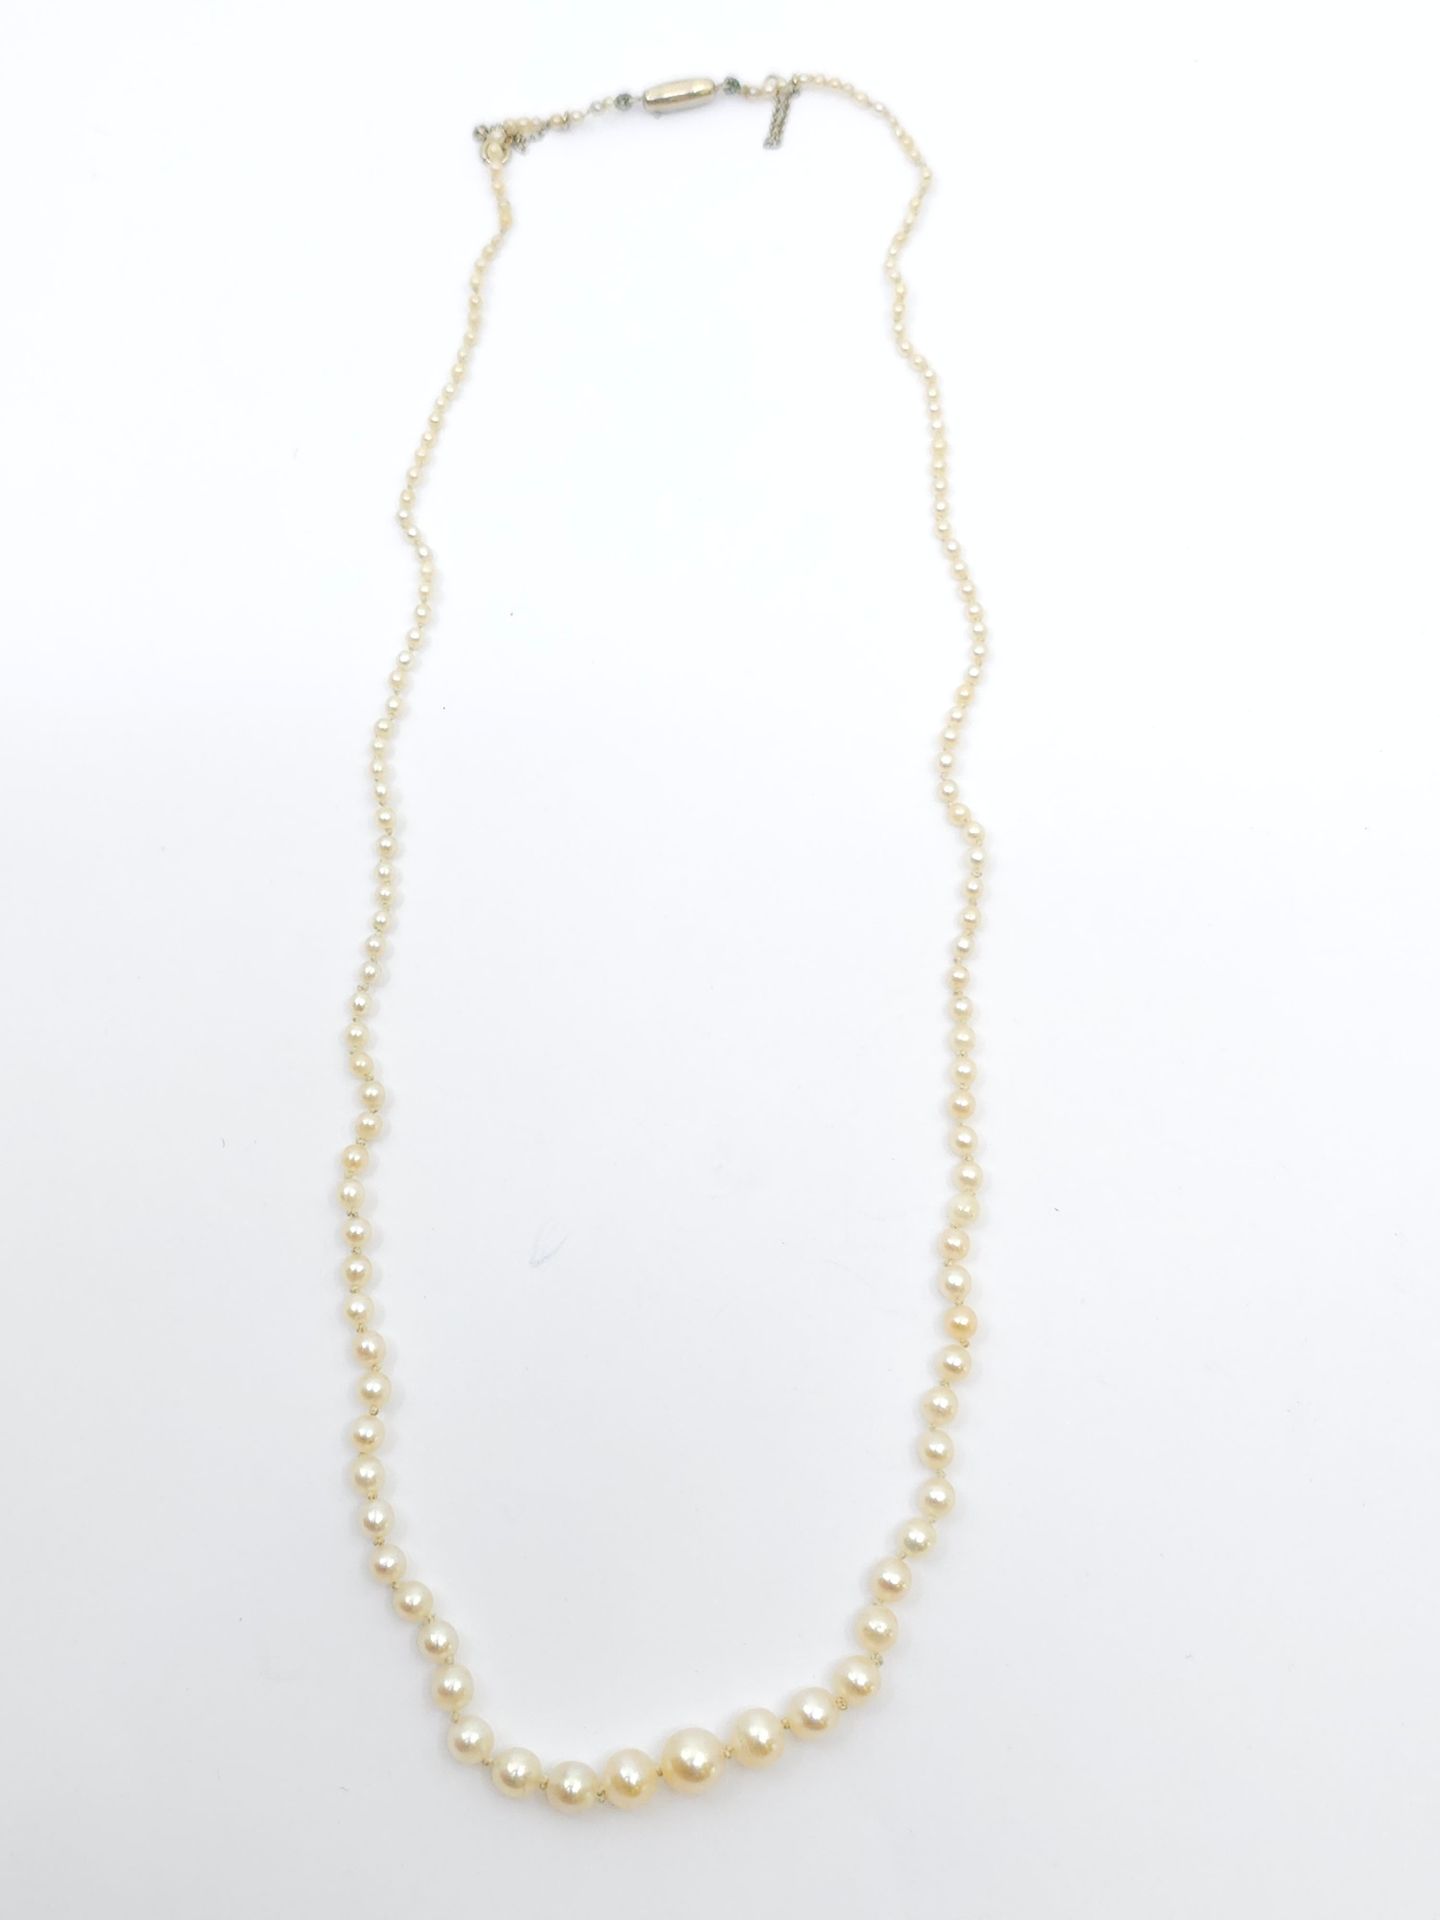 Null 项链，可能由上等珍珠制成，黄金棘轮扣，配安全链
毛重：5.5 克